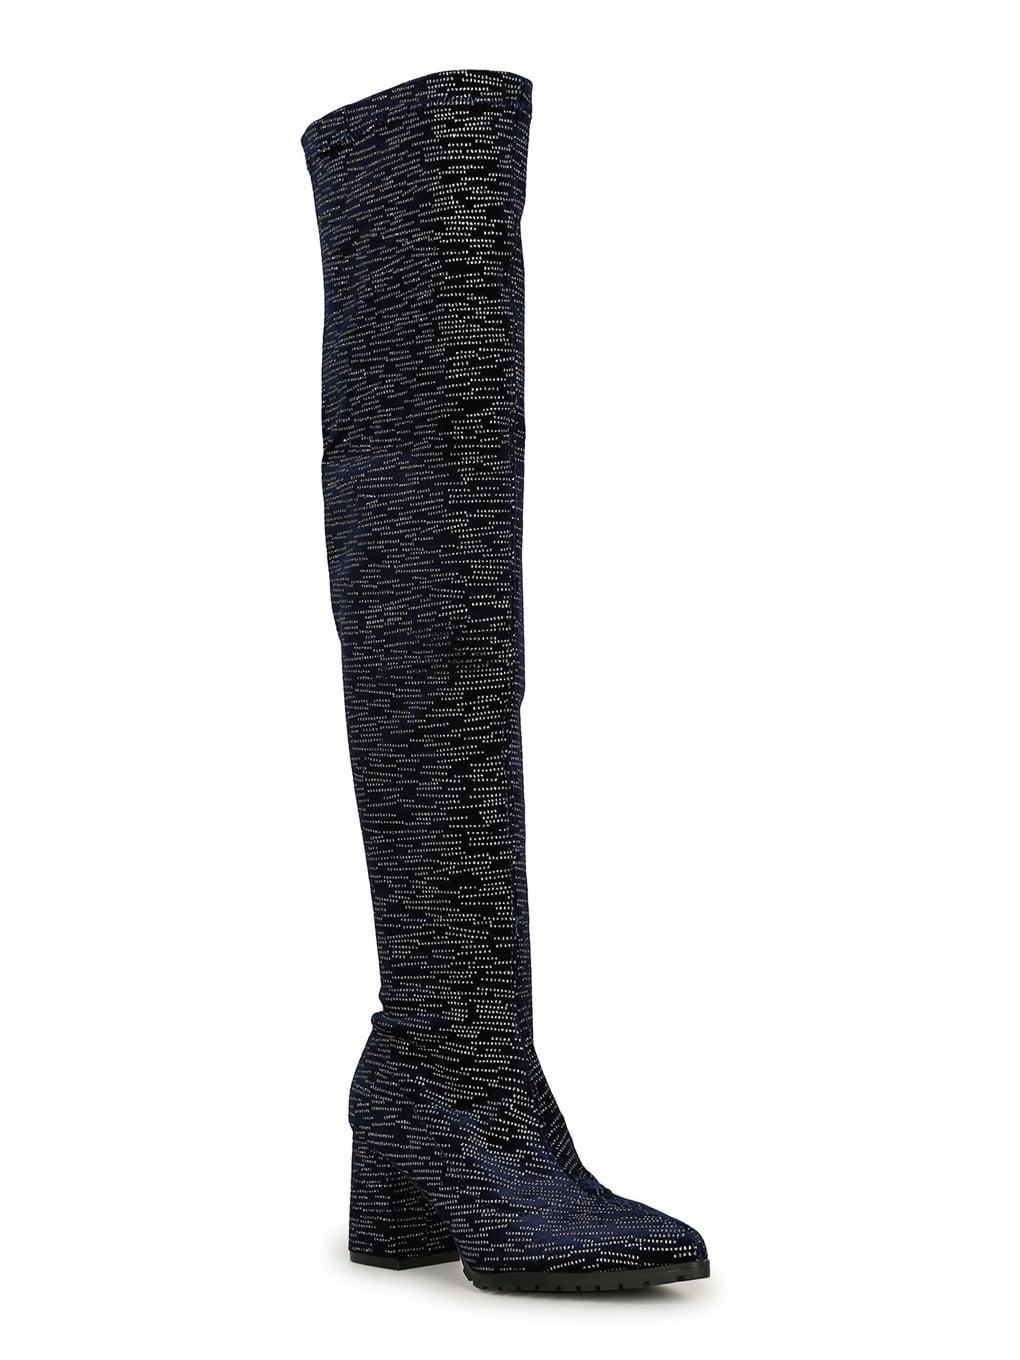 Yoki Black Vegan Suede Slouchy Shaft Flat Knee Boot US Size 6-11 